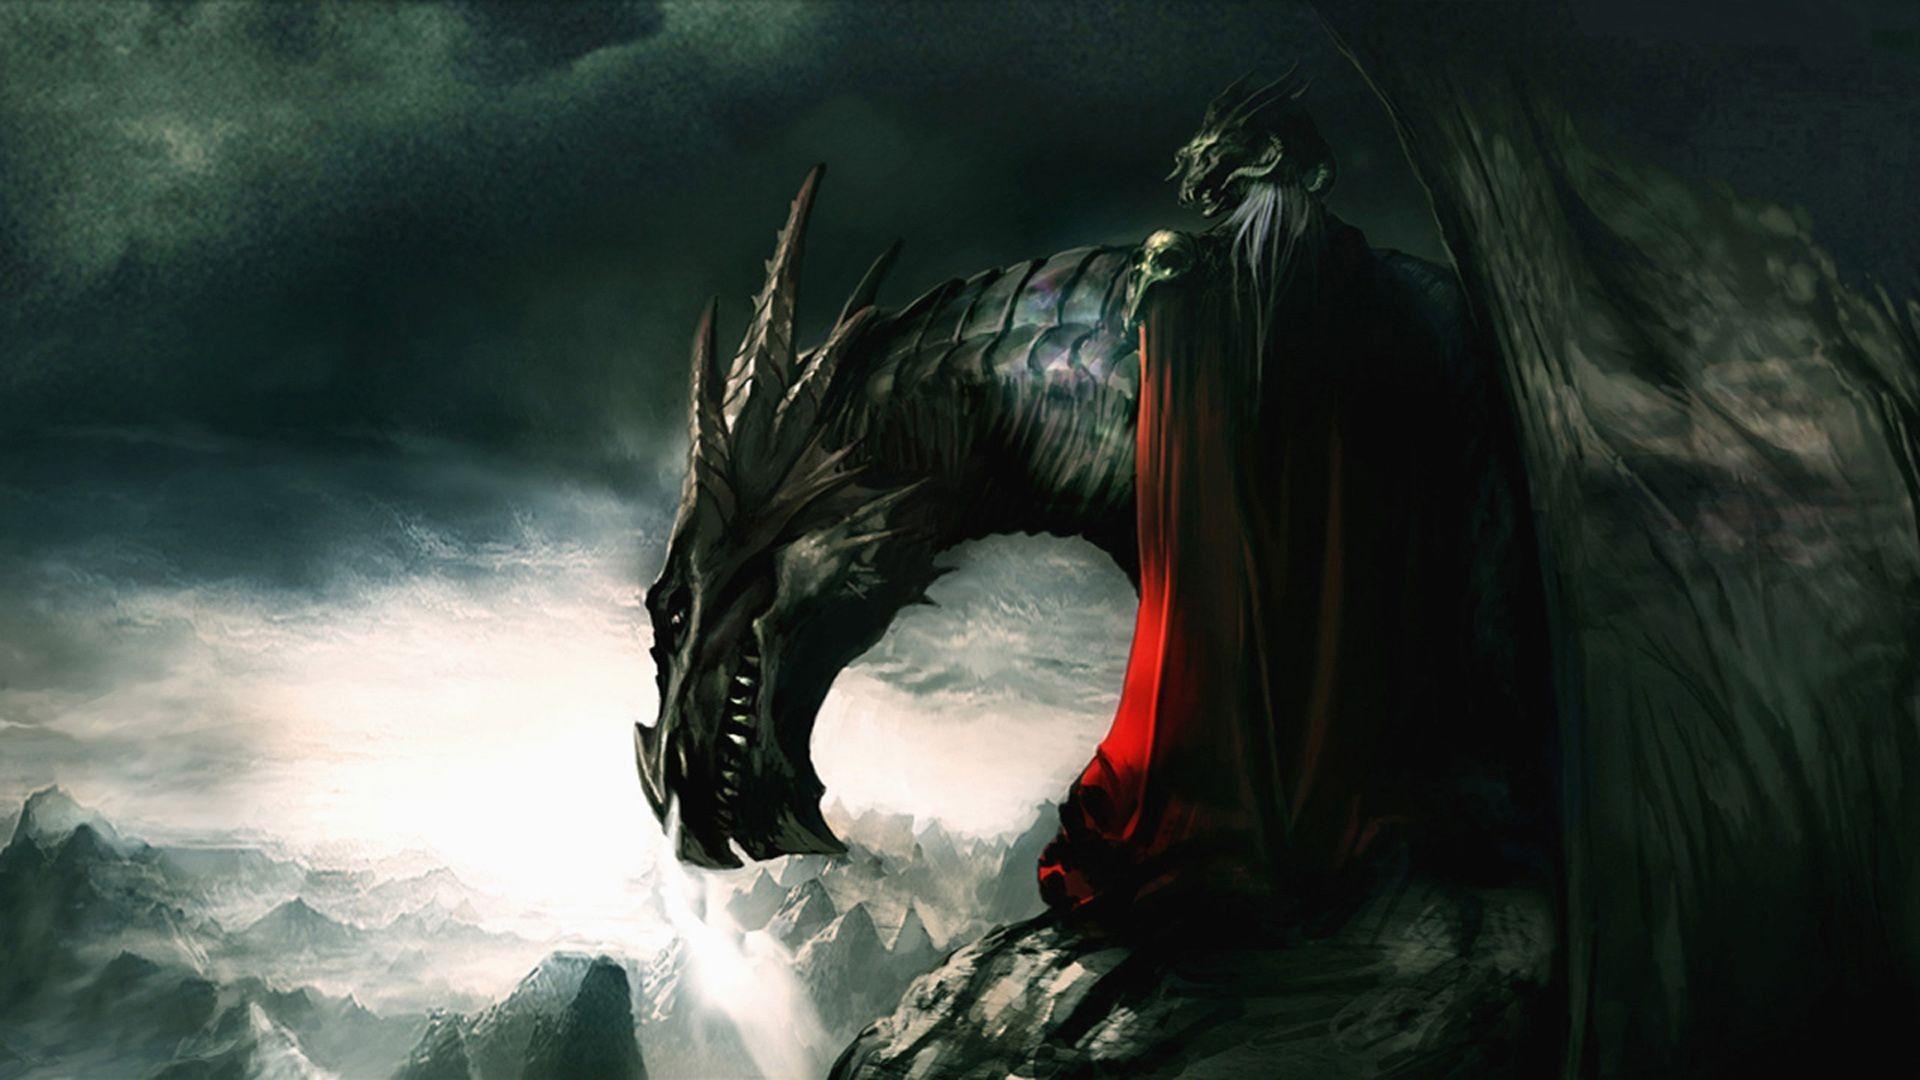 Dragons wallpaperDownload free stunning HD background